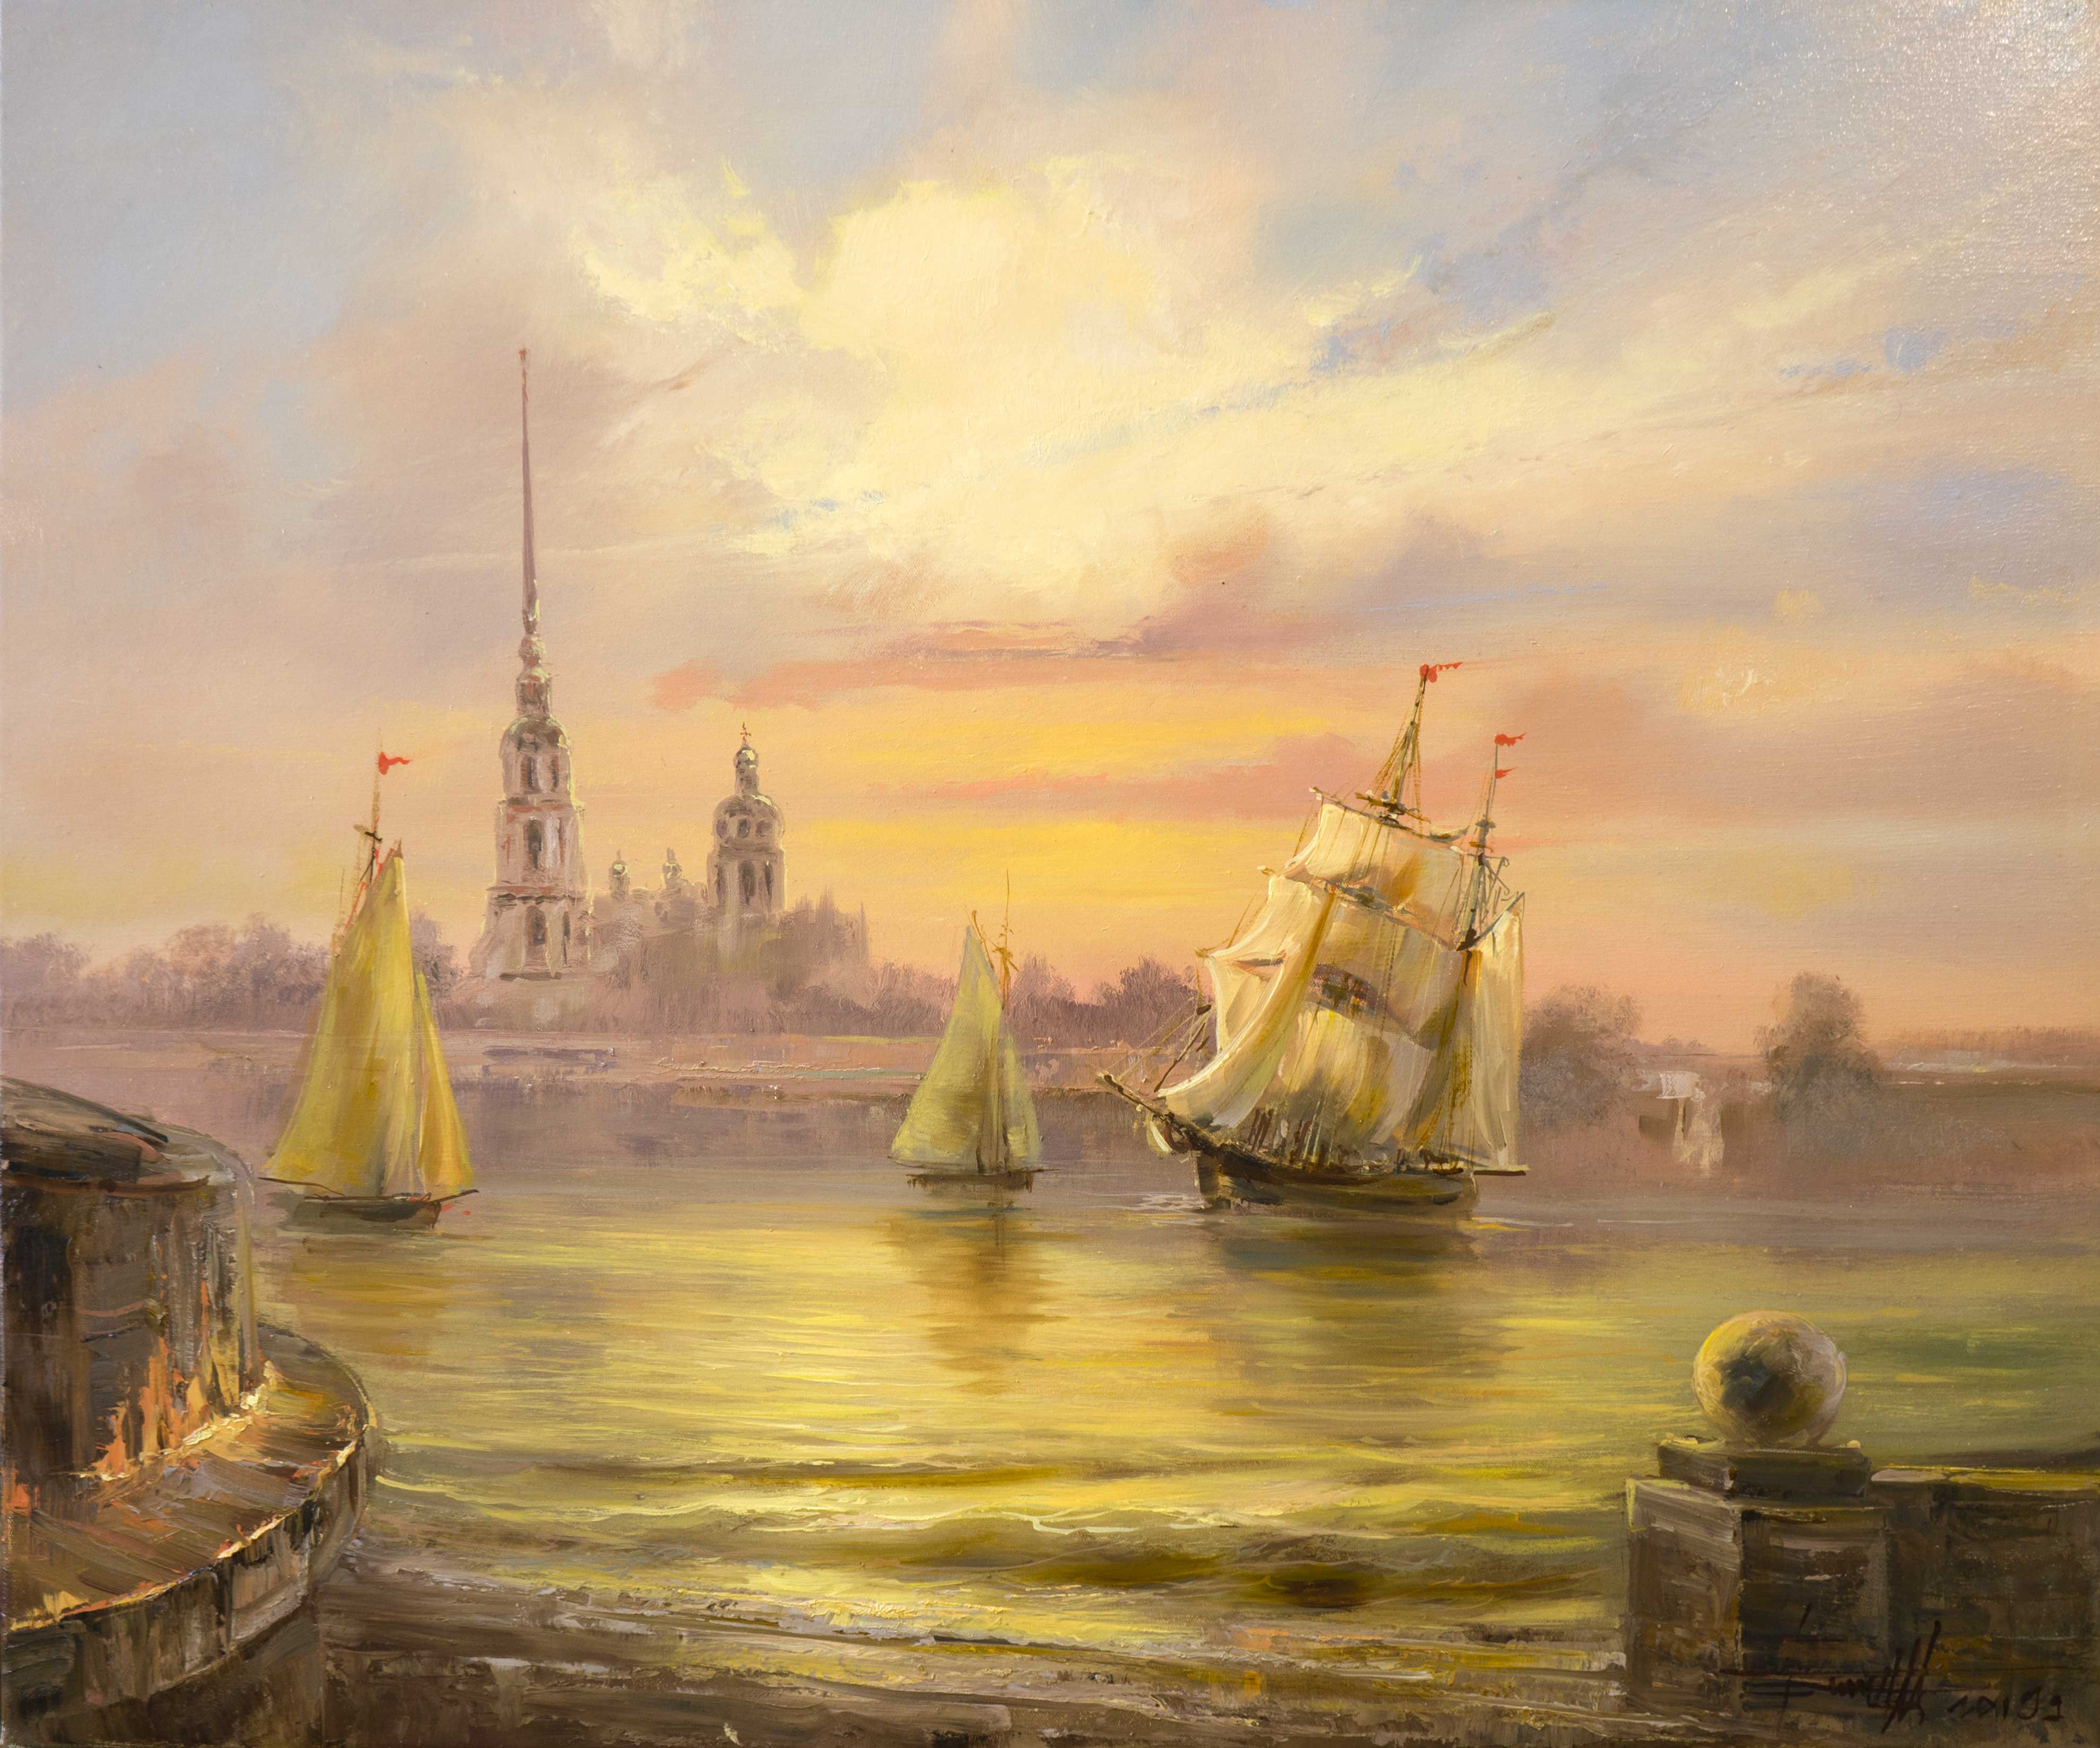 Neva. St. Petersburg - 1, Dmitry Balakhonov, Buy the painting Oil